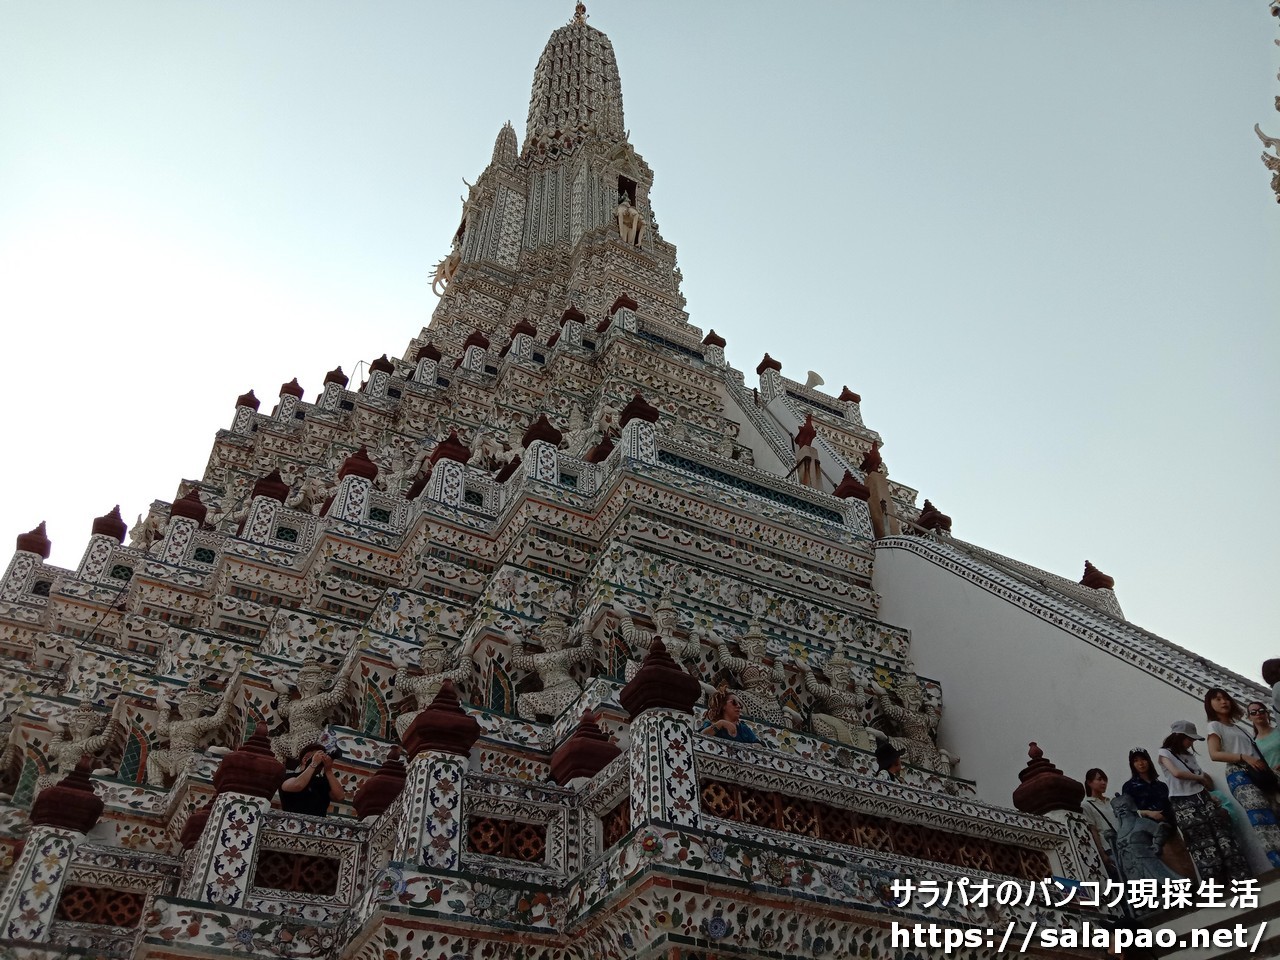 ワット・アルンは神々が支える白い仏塔で有名な第一級王室寺院